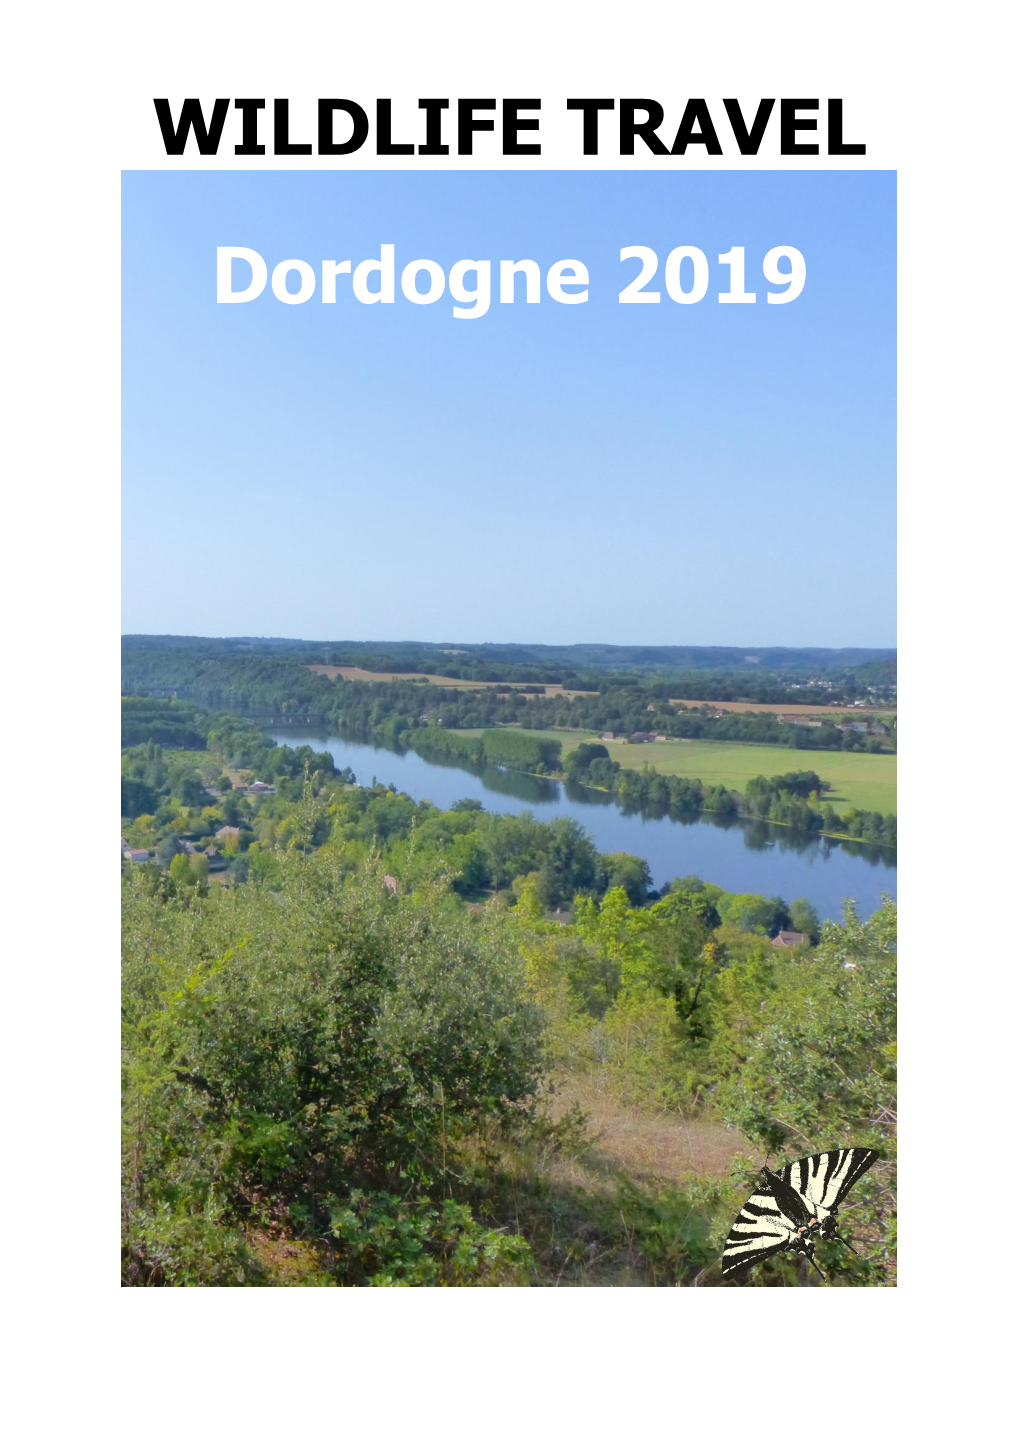 WILDLIFE TRAVEL Dordogne 2019